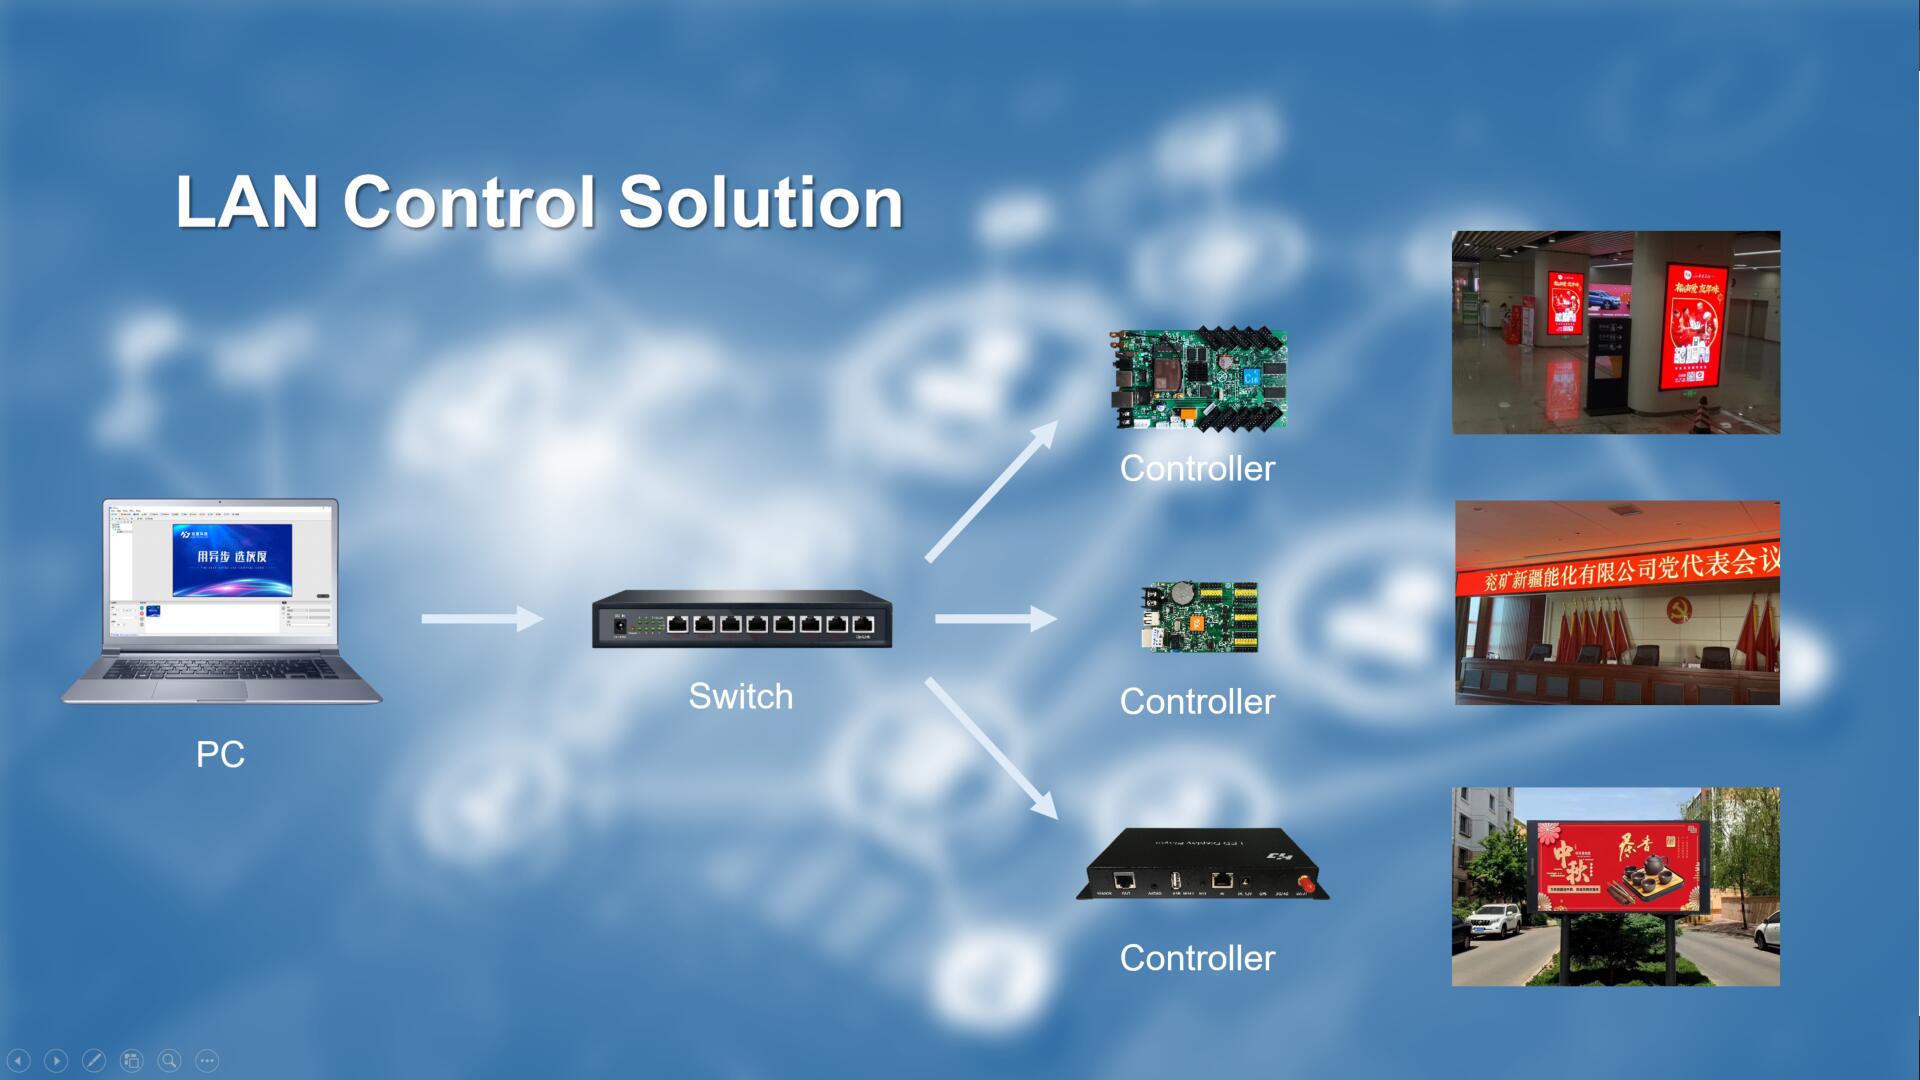 LAN Control Solution